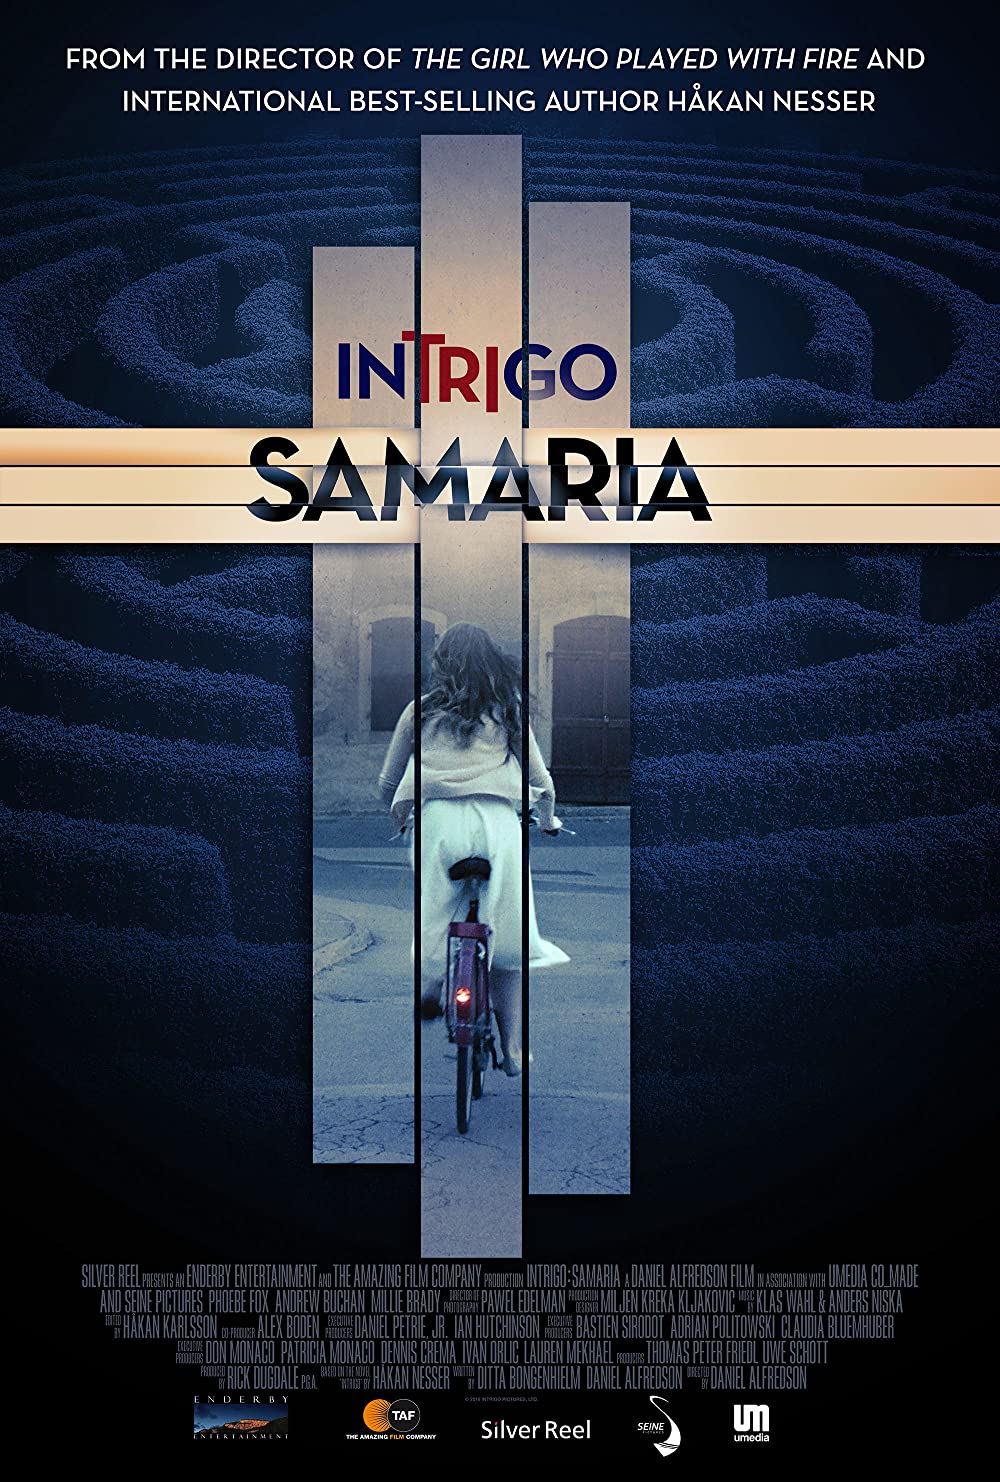 Filmbeschreibung zu Intrigo: Samaria